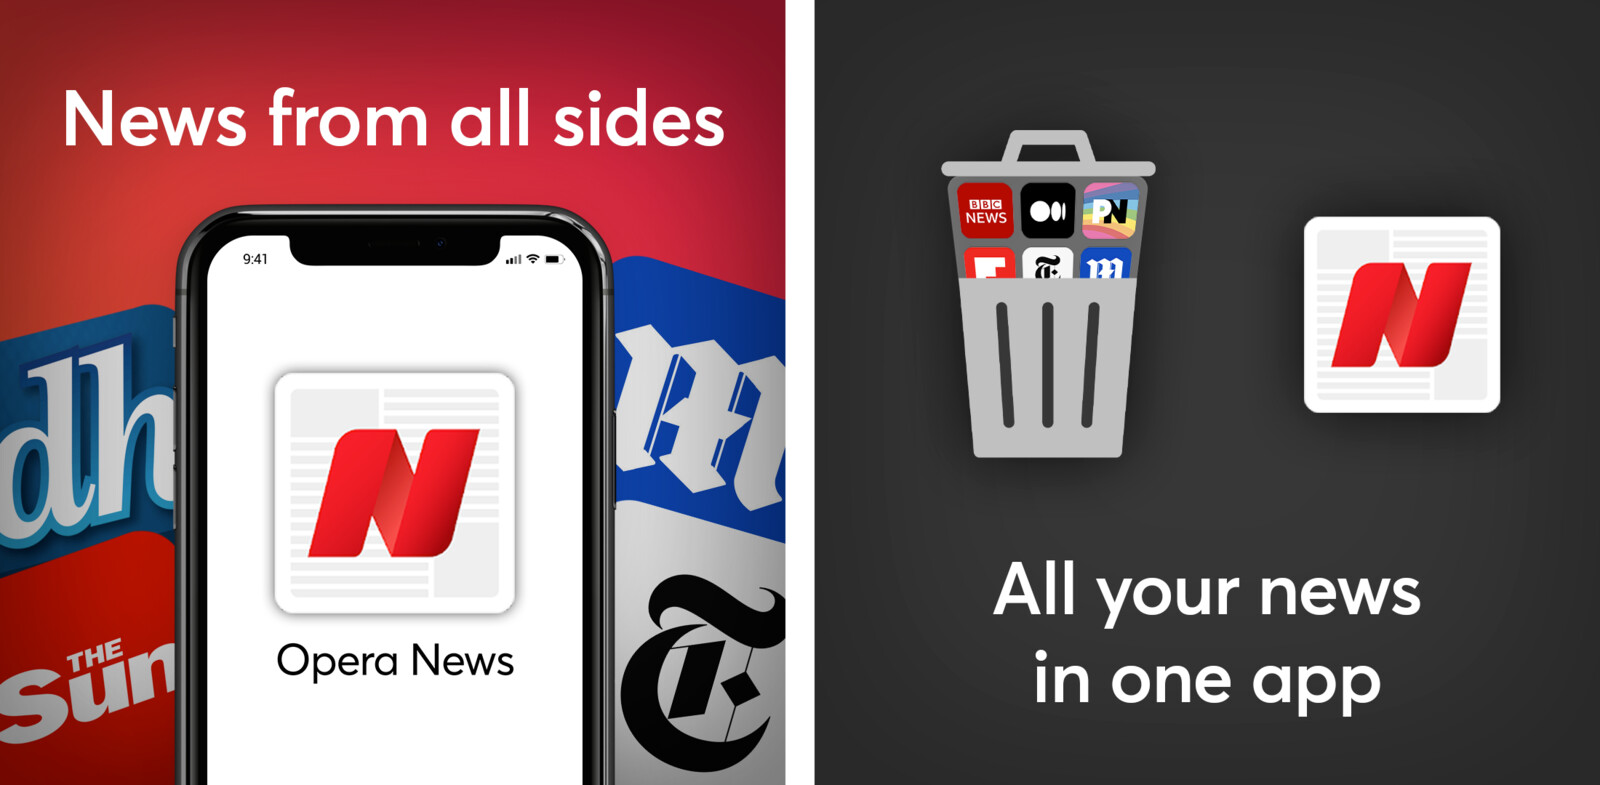 Static ads for Opera News, a news aggregator app